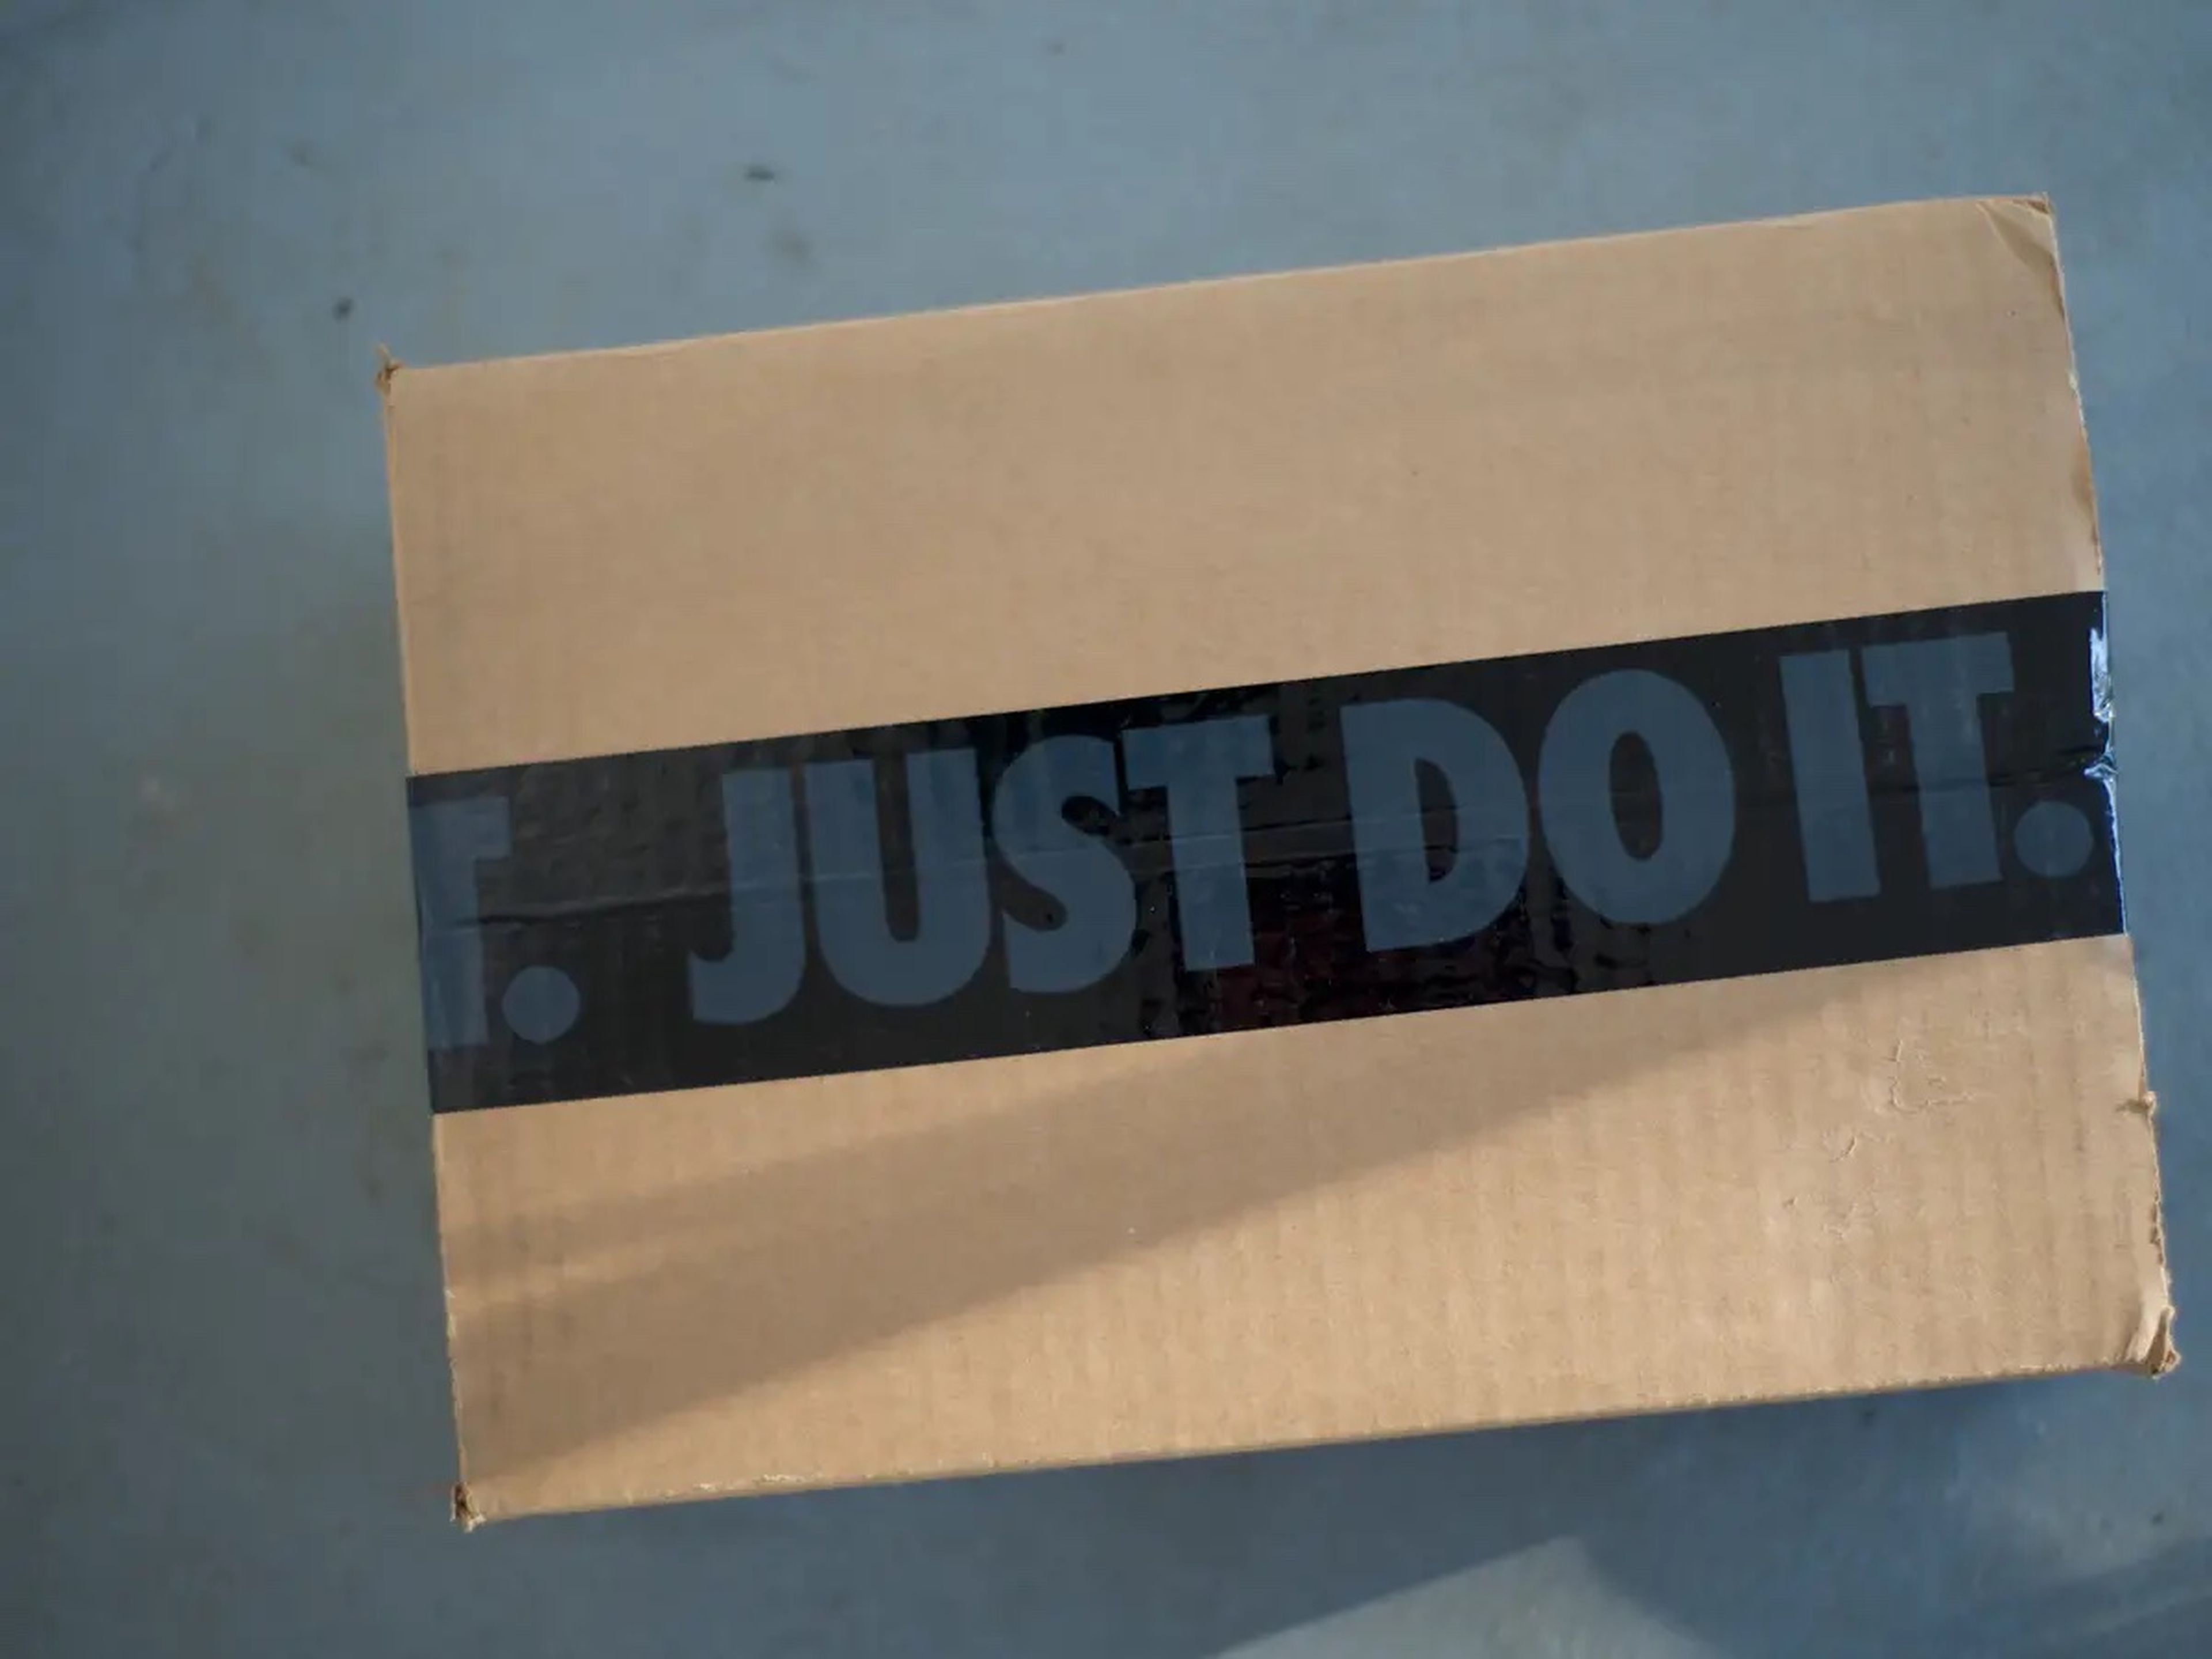 Nike está tratando de enviar sus productos a la velocidad de Amazon.